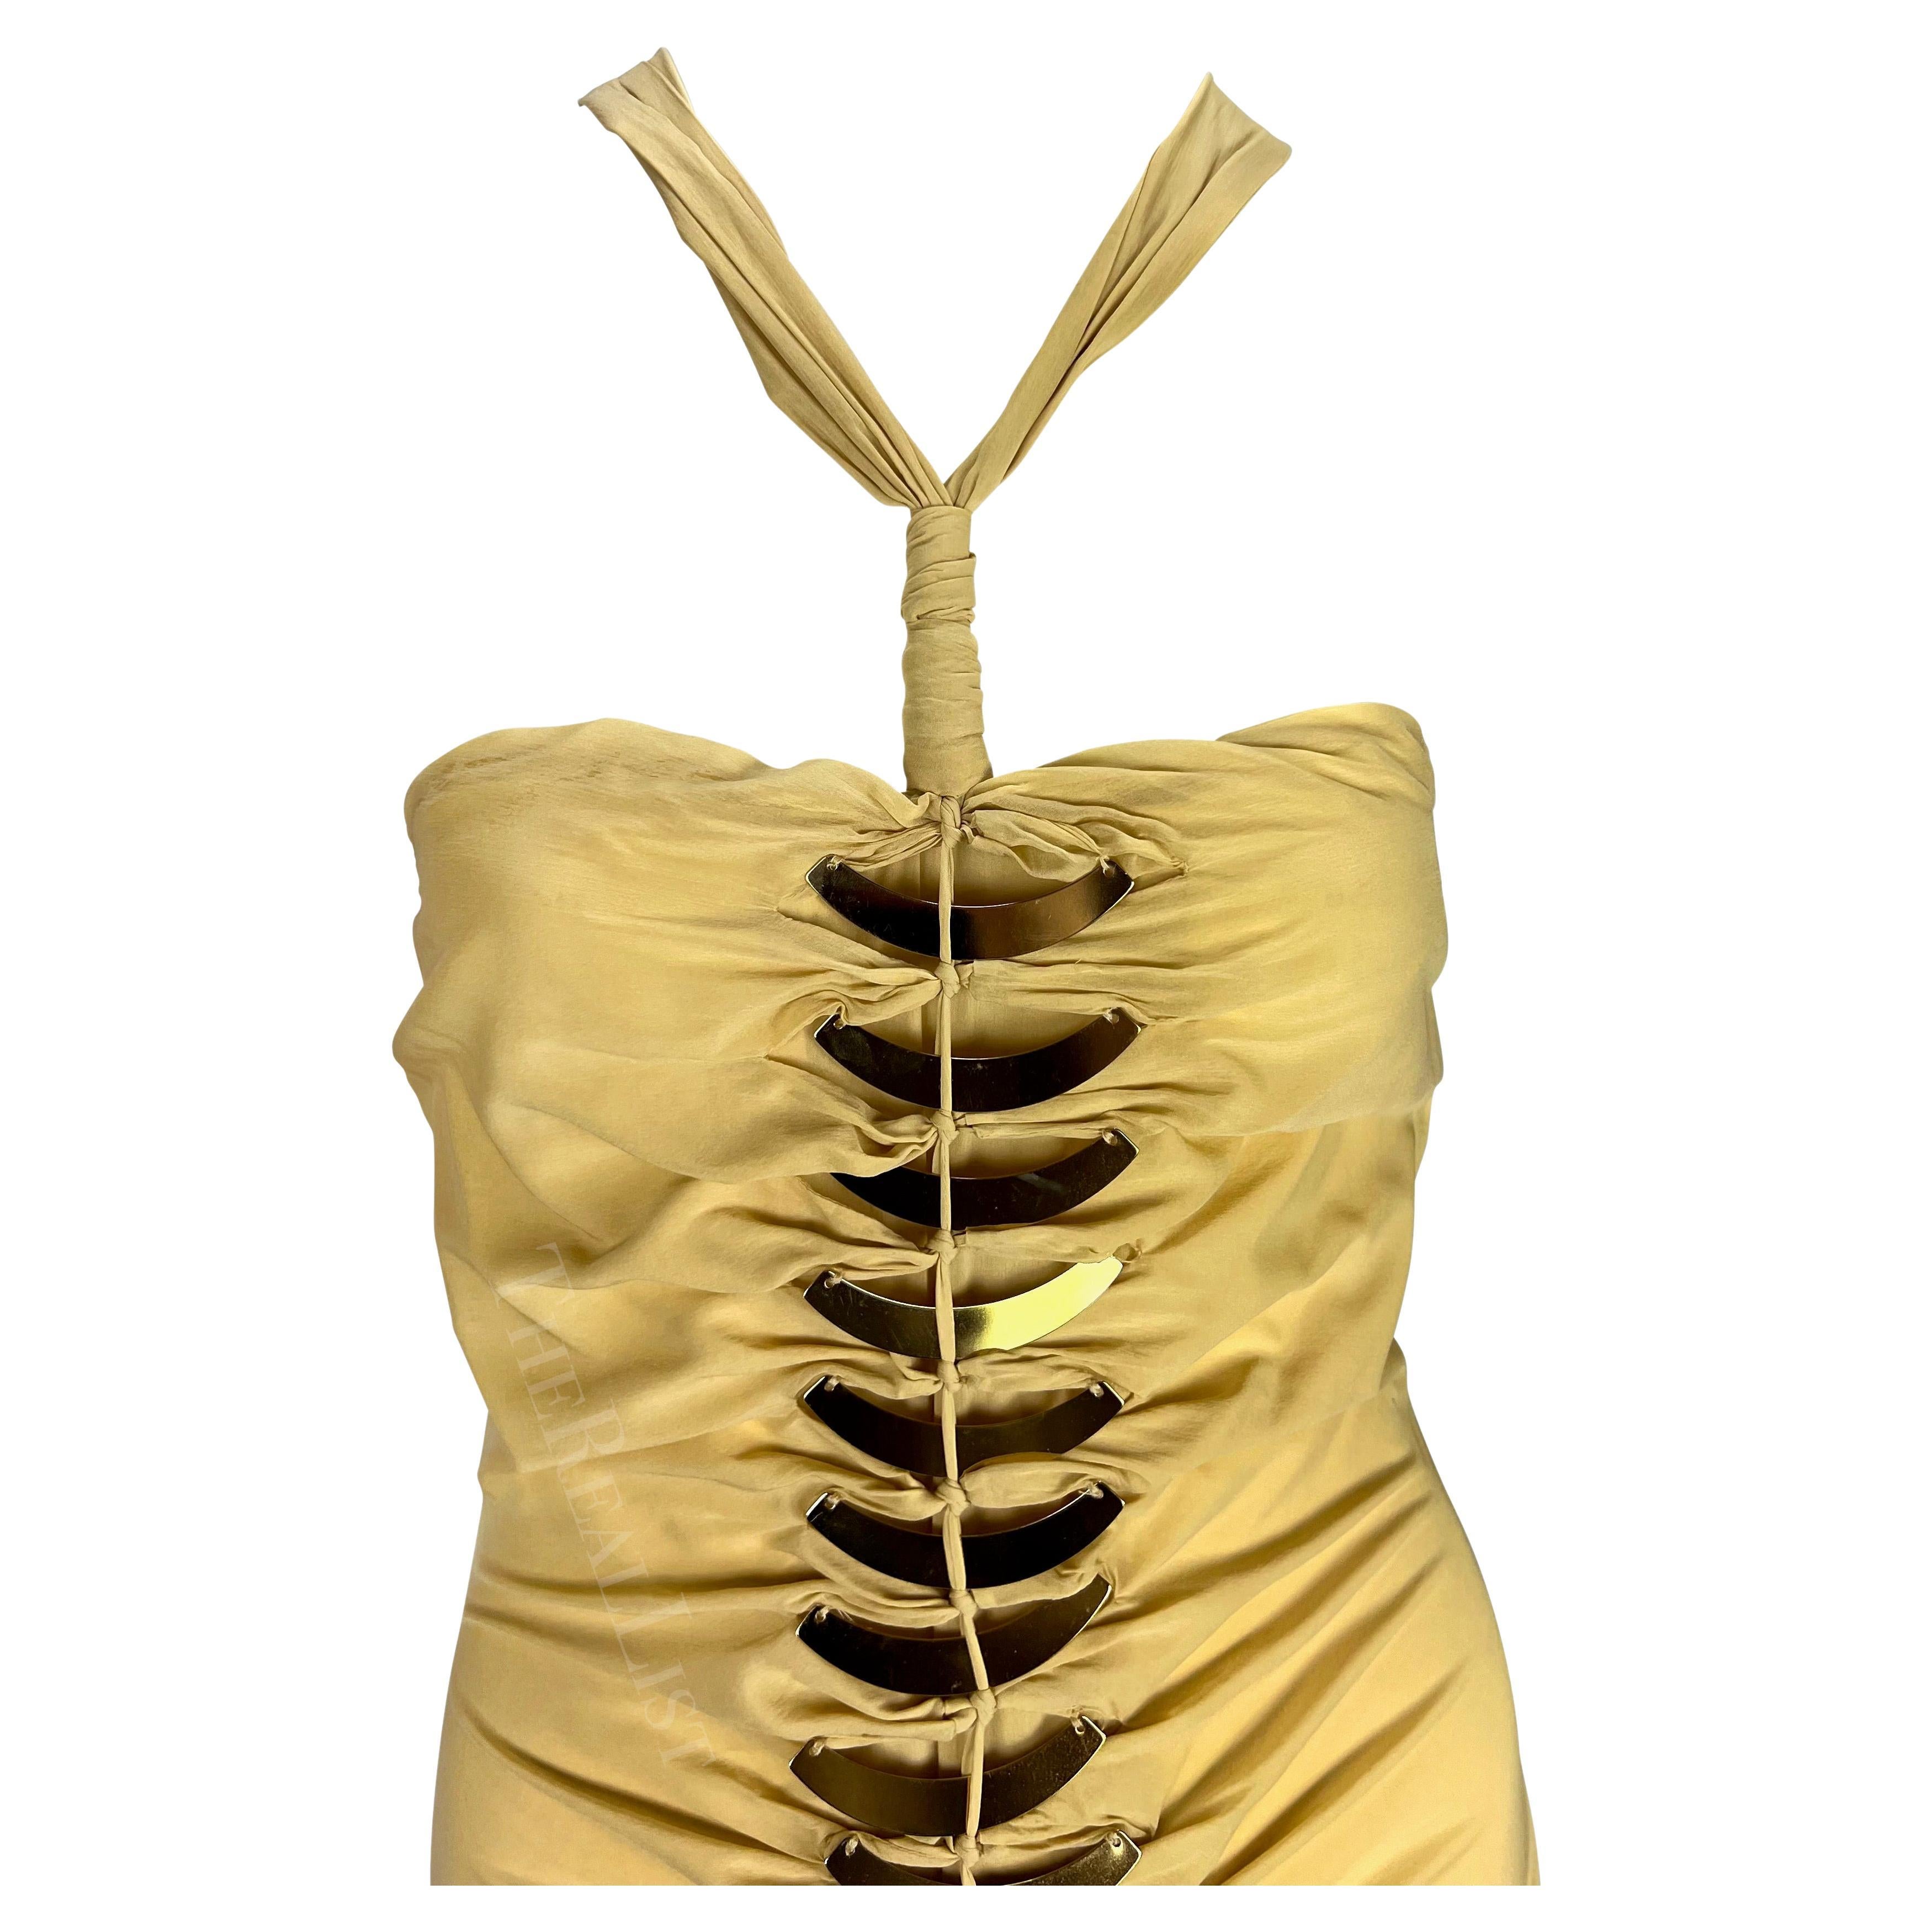 Wir präsentieren ein fabelhaftes Gucci Minikleid mit goldfarbenen Metallakzenten, entworfen von Alessandra Facchinetti. Dieses Kleid aus der Frühjahr/Sommer-Kollektion 2005 zeichnet sich durch goldfarbene Metallakzente aus, die vorne und hinten am